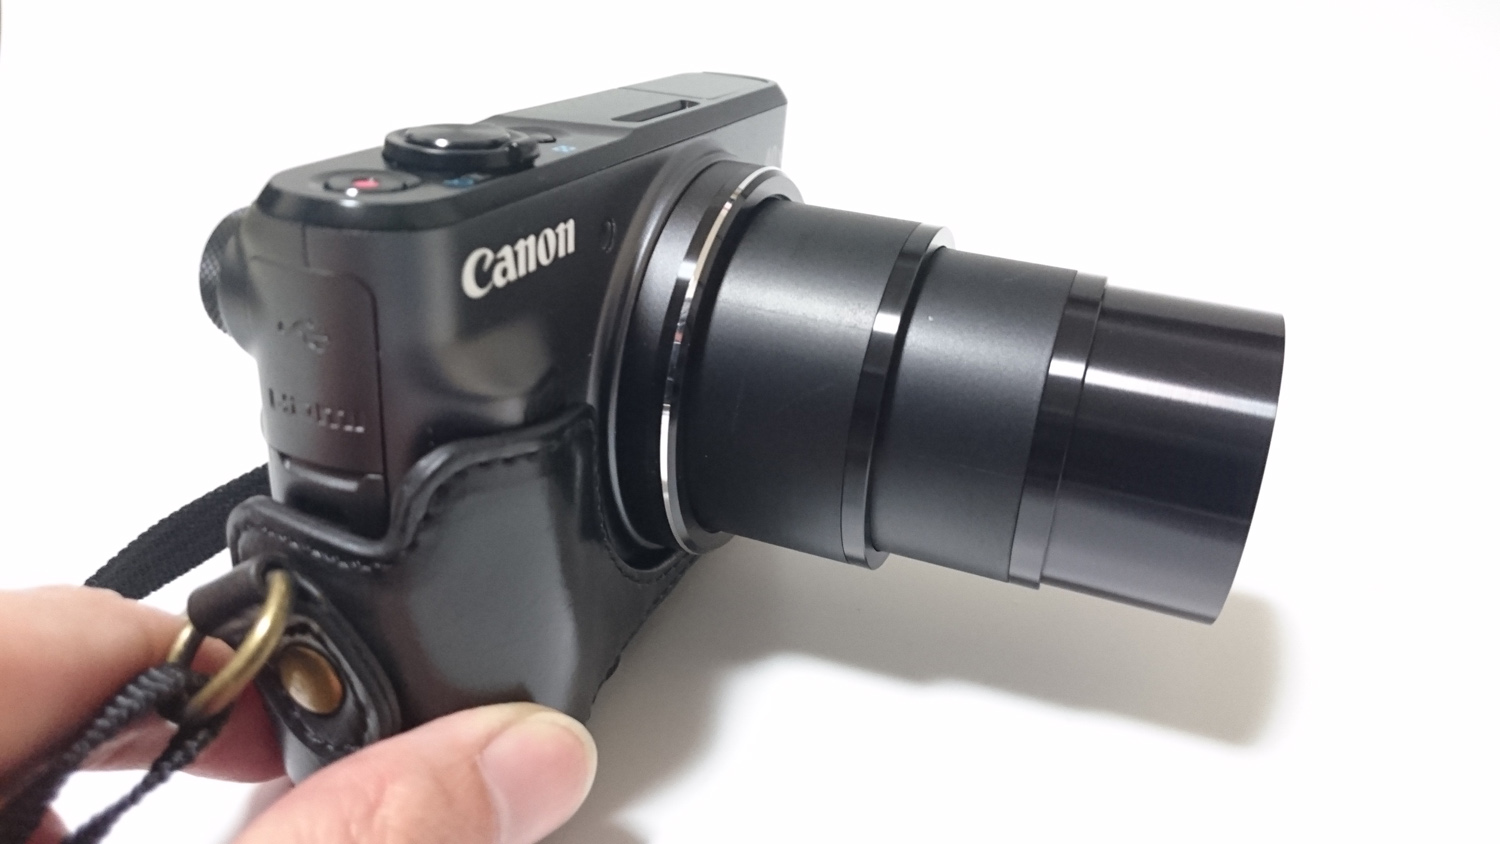 Canon - 【極美品】Canon Powershot SX710HS レッド デジカメの+